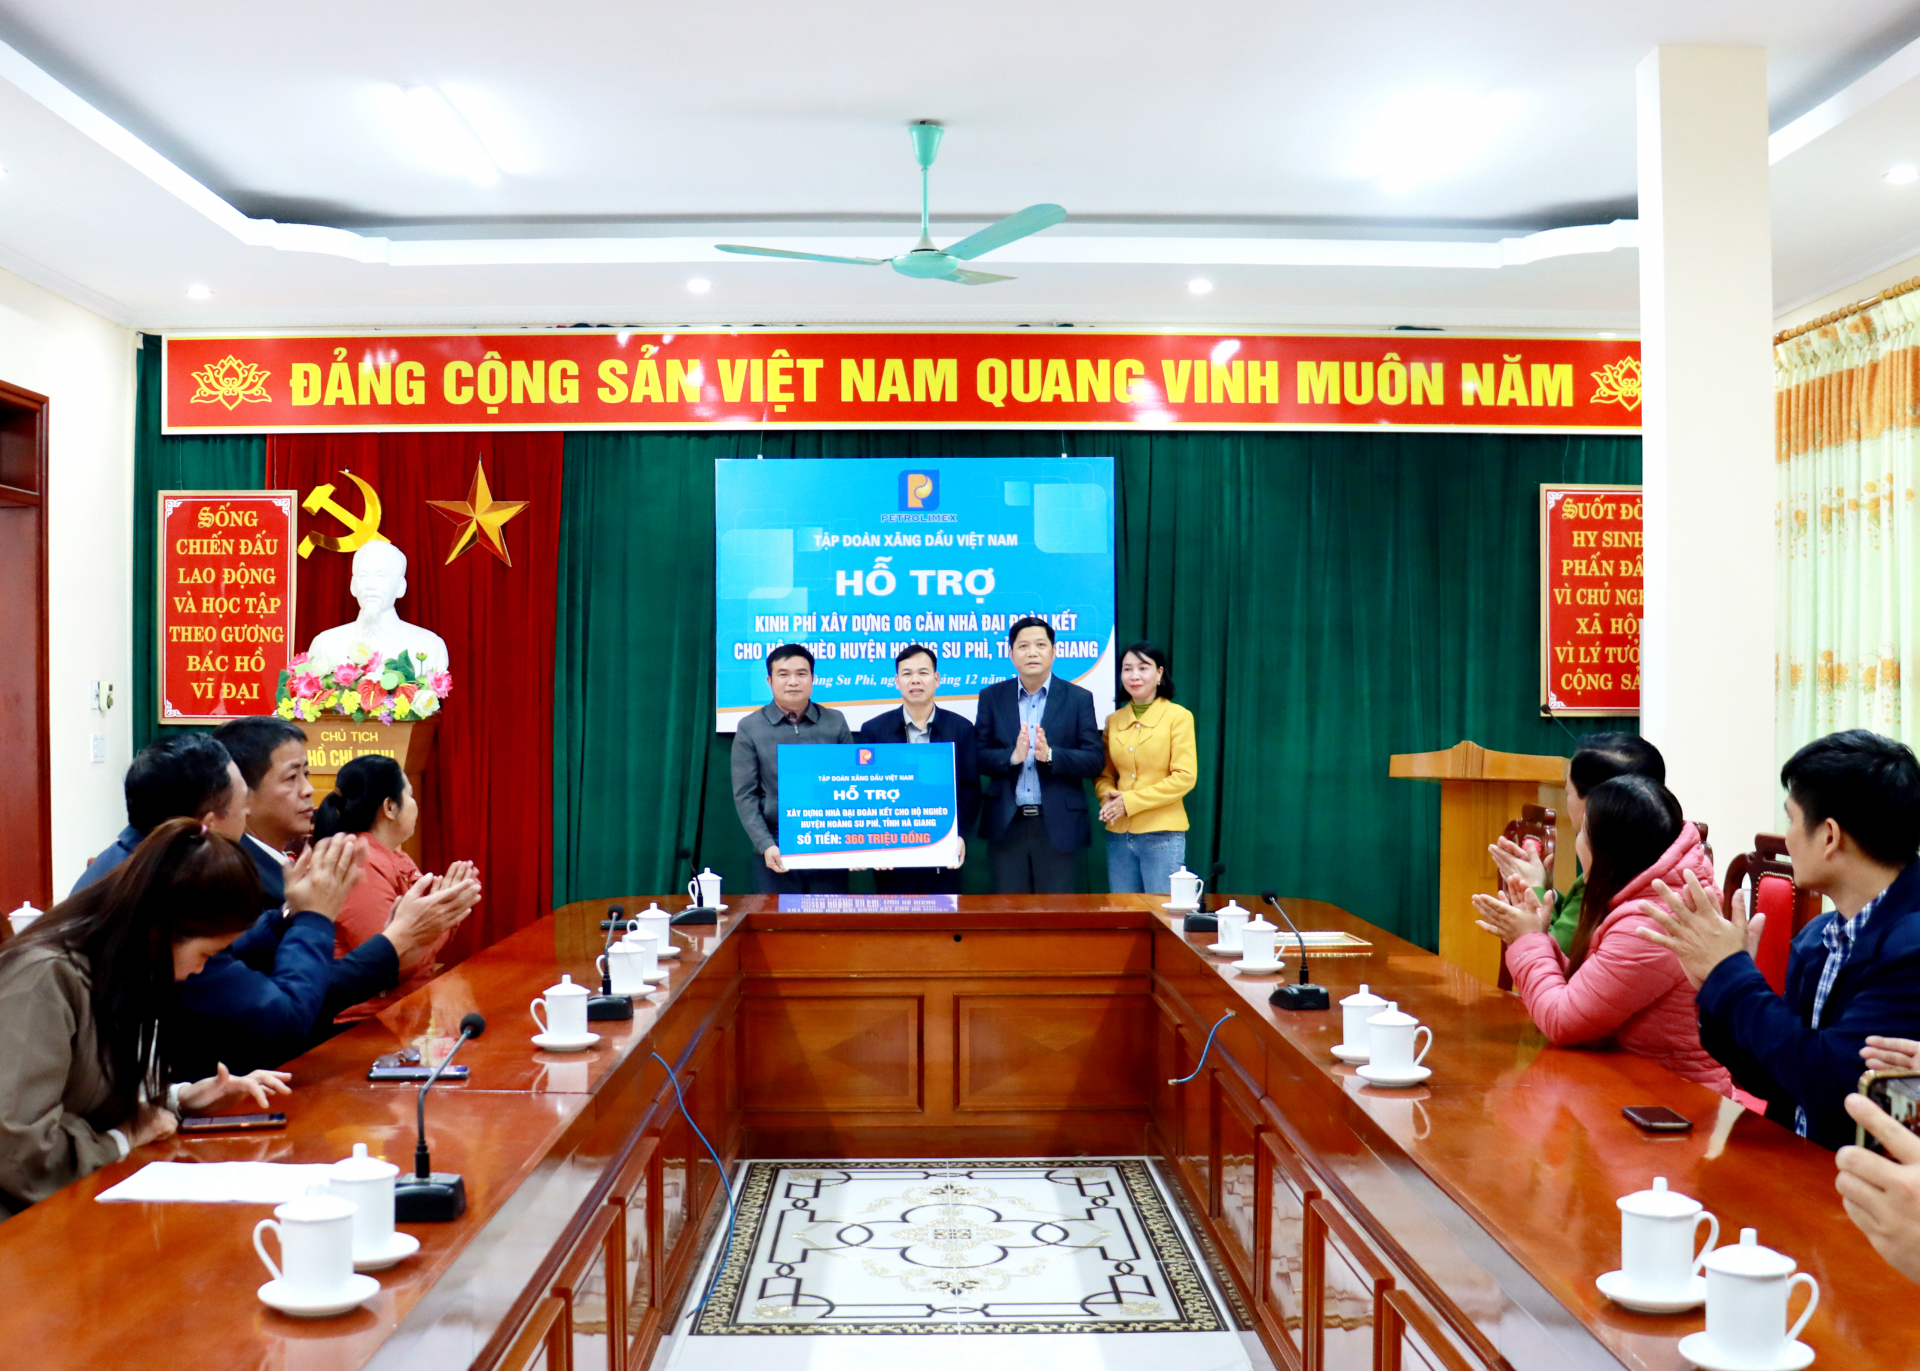 Lãnh đạo Công ty Xăng dầu Hà Giang trao 360 triệu đồng của Tập đoàn Xăng dầu Việt Nam cho huyện Hoàng Su Phì để hỗ trợ xây dựng nhà ở cho hộ nghèo.
